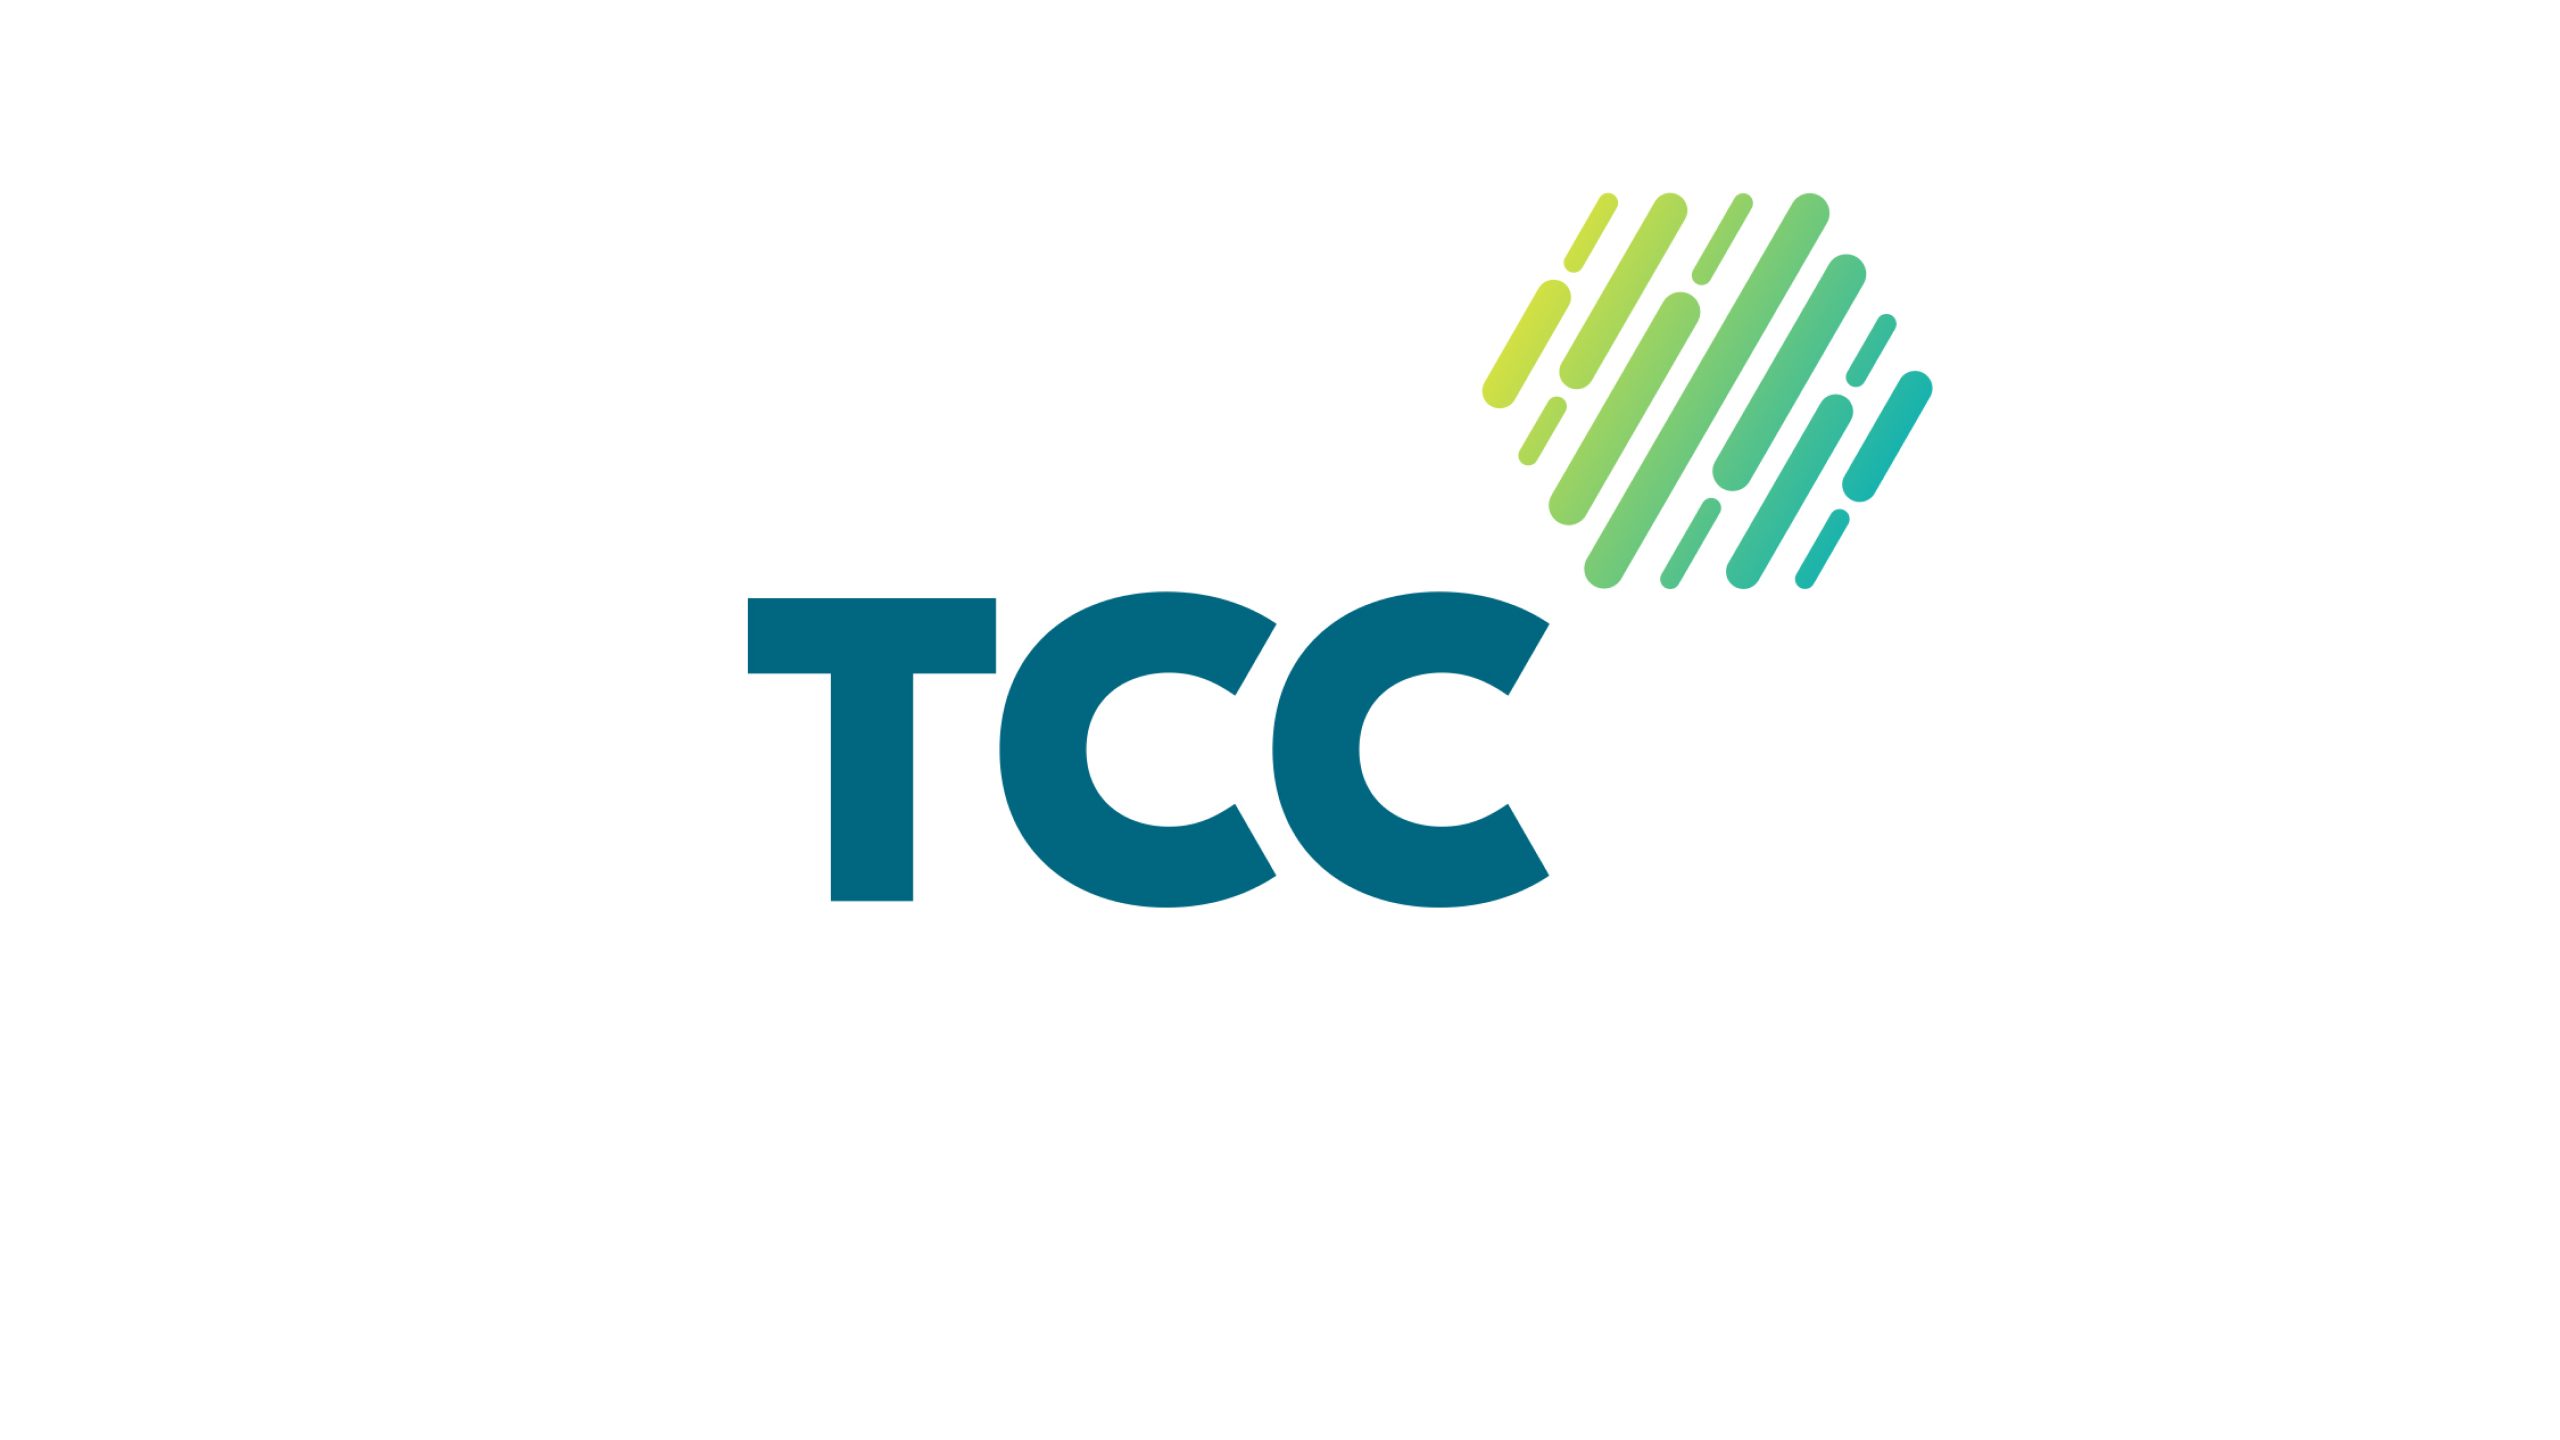 TCC colour logo